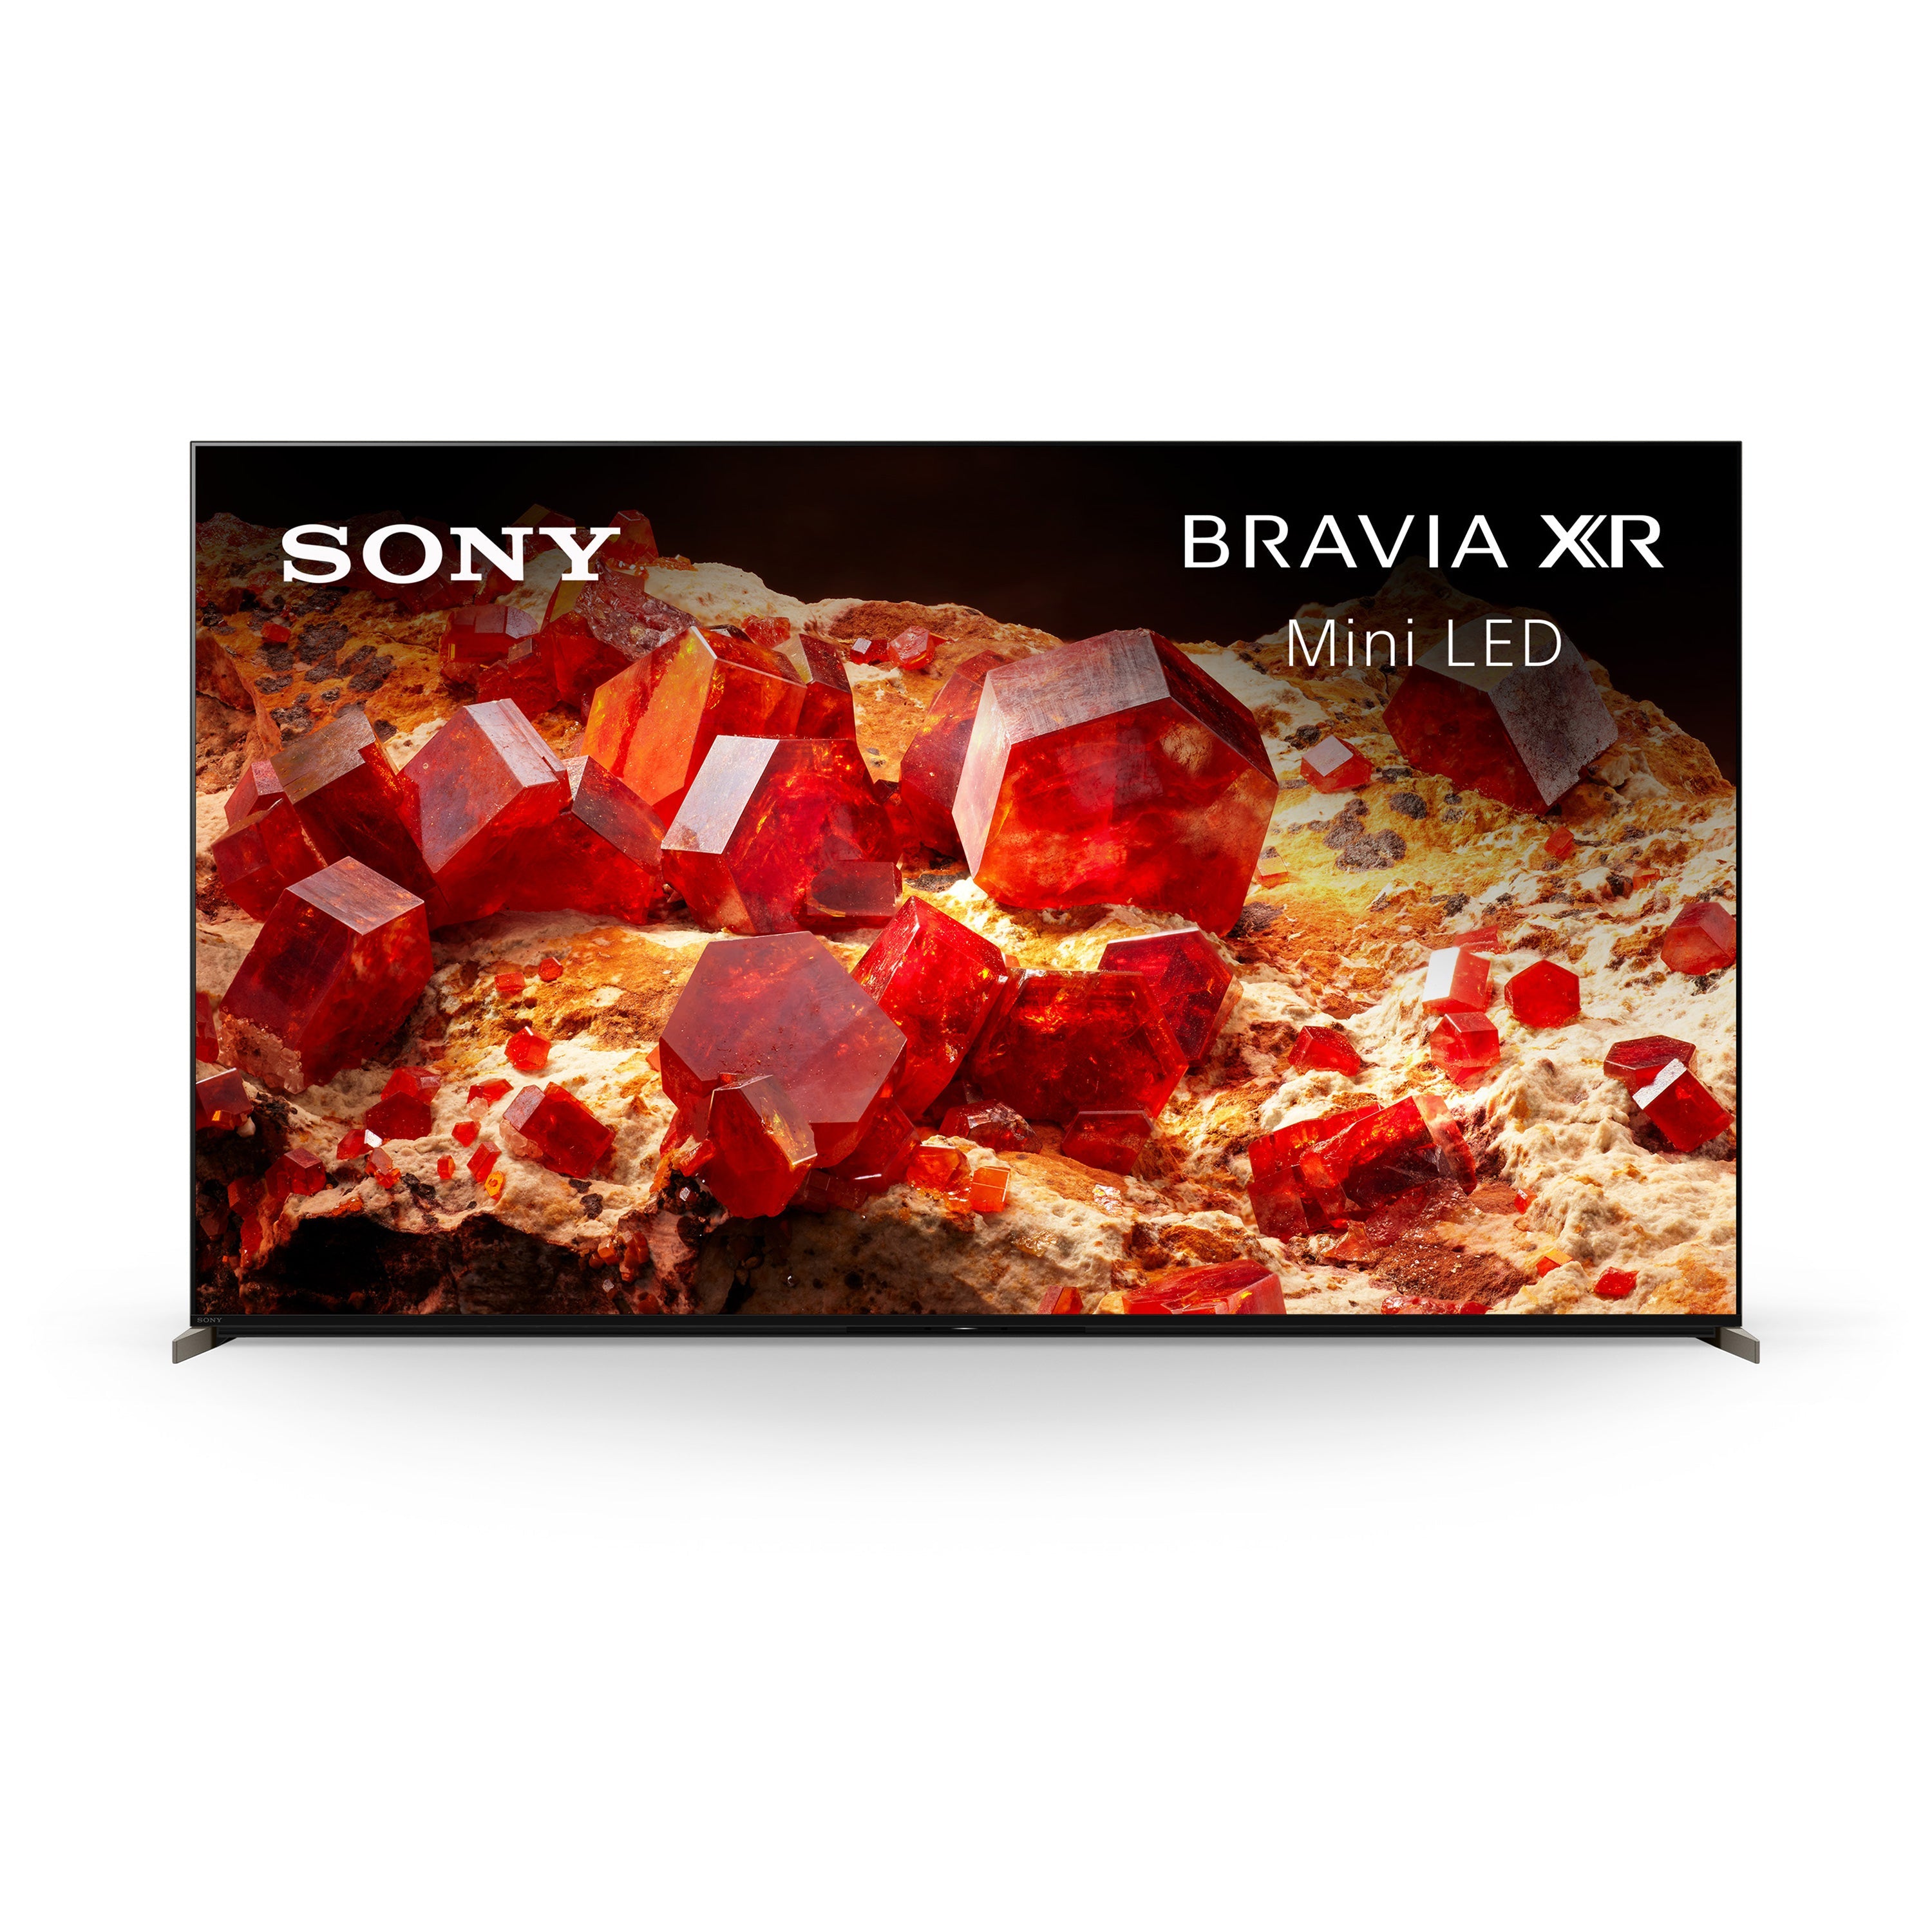 Sony X93L BRAVIA XR | Mini LED | 4K HDR TV | Smart TV (Google TV)